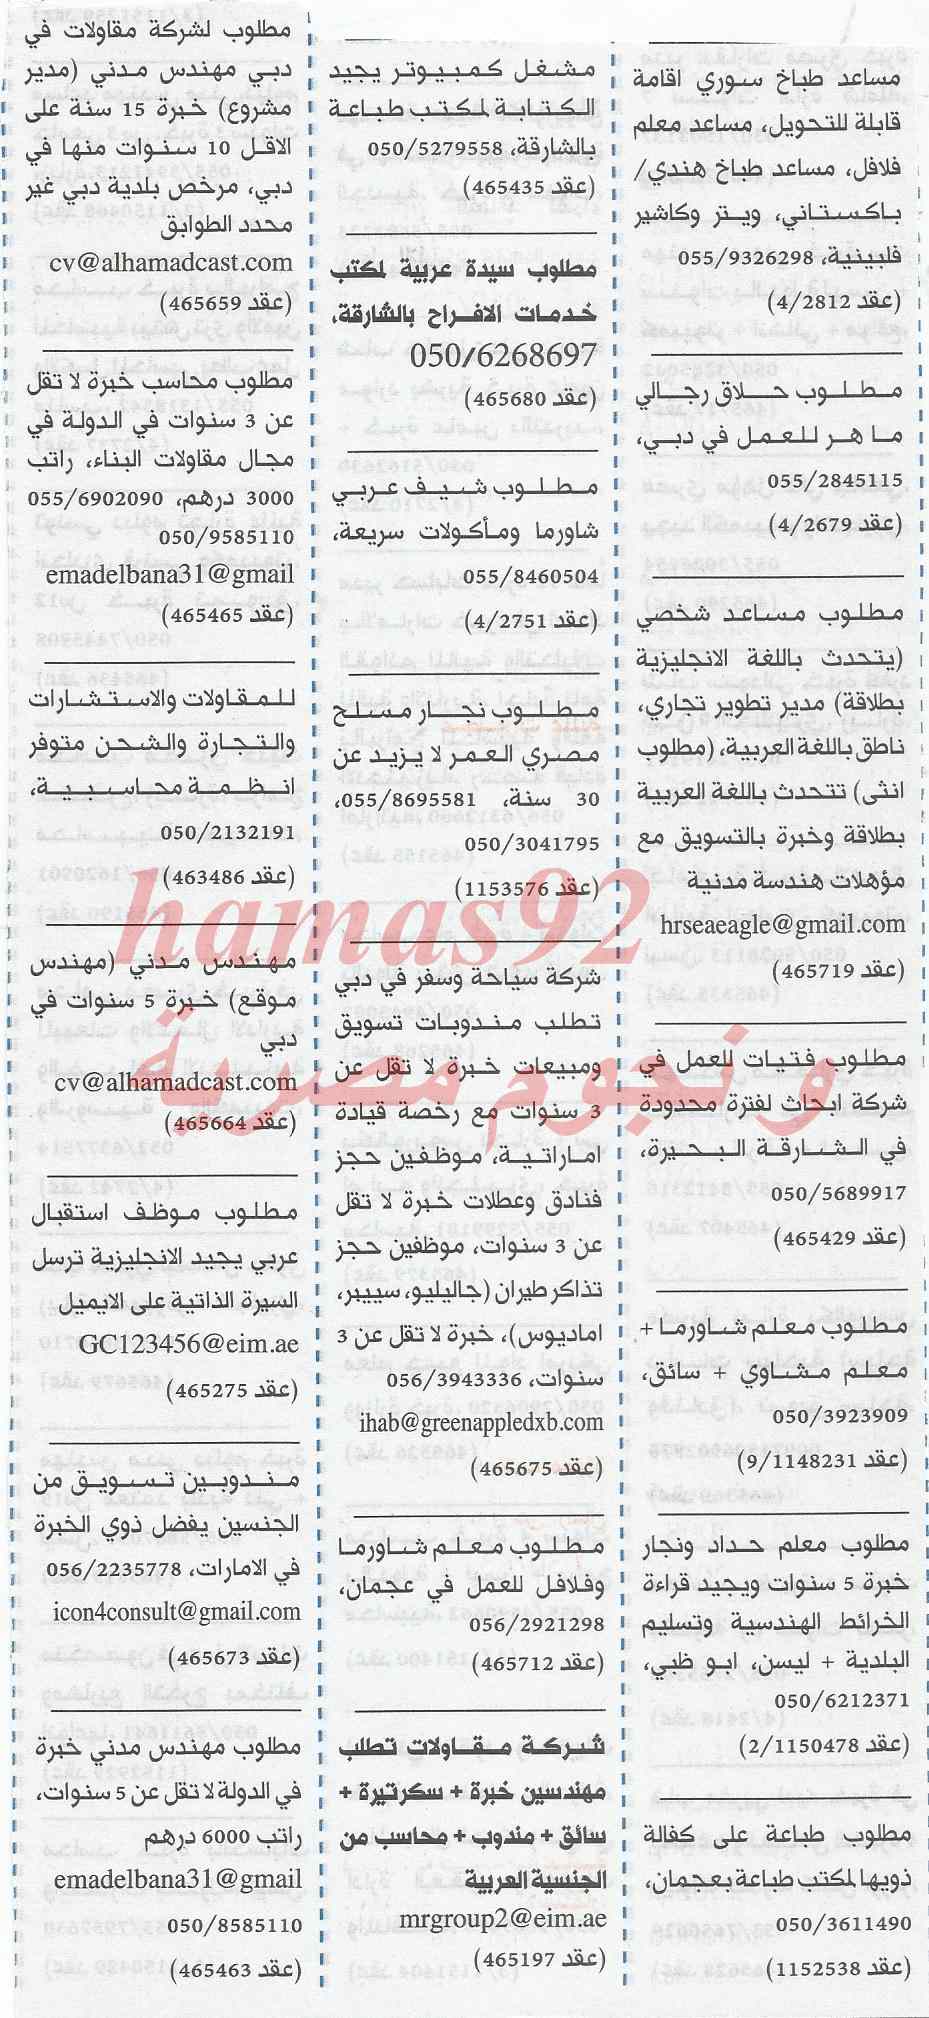 وظائف جريدة الخليج الامارات اليوم الجمعة 14-2-2014 ،، وظائف خالية في الامارات اليوم 14-2-2014